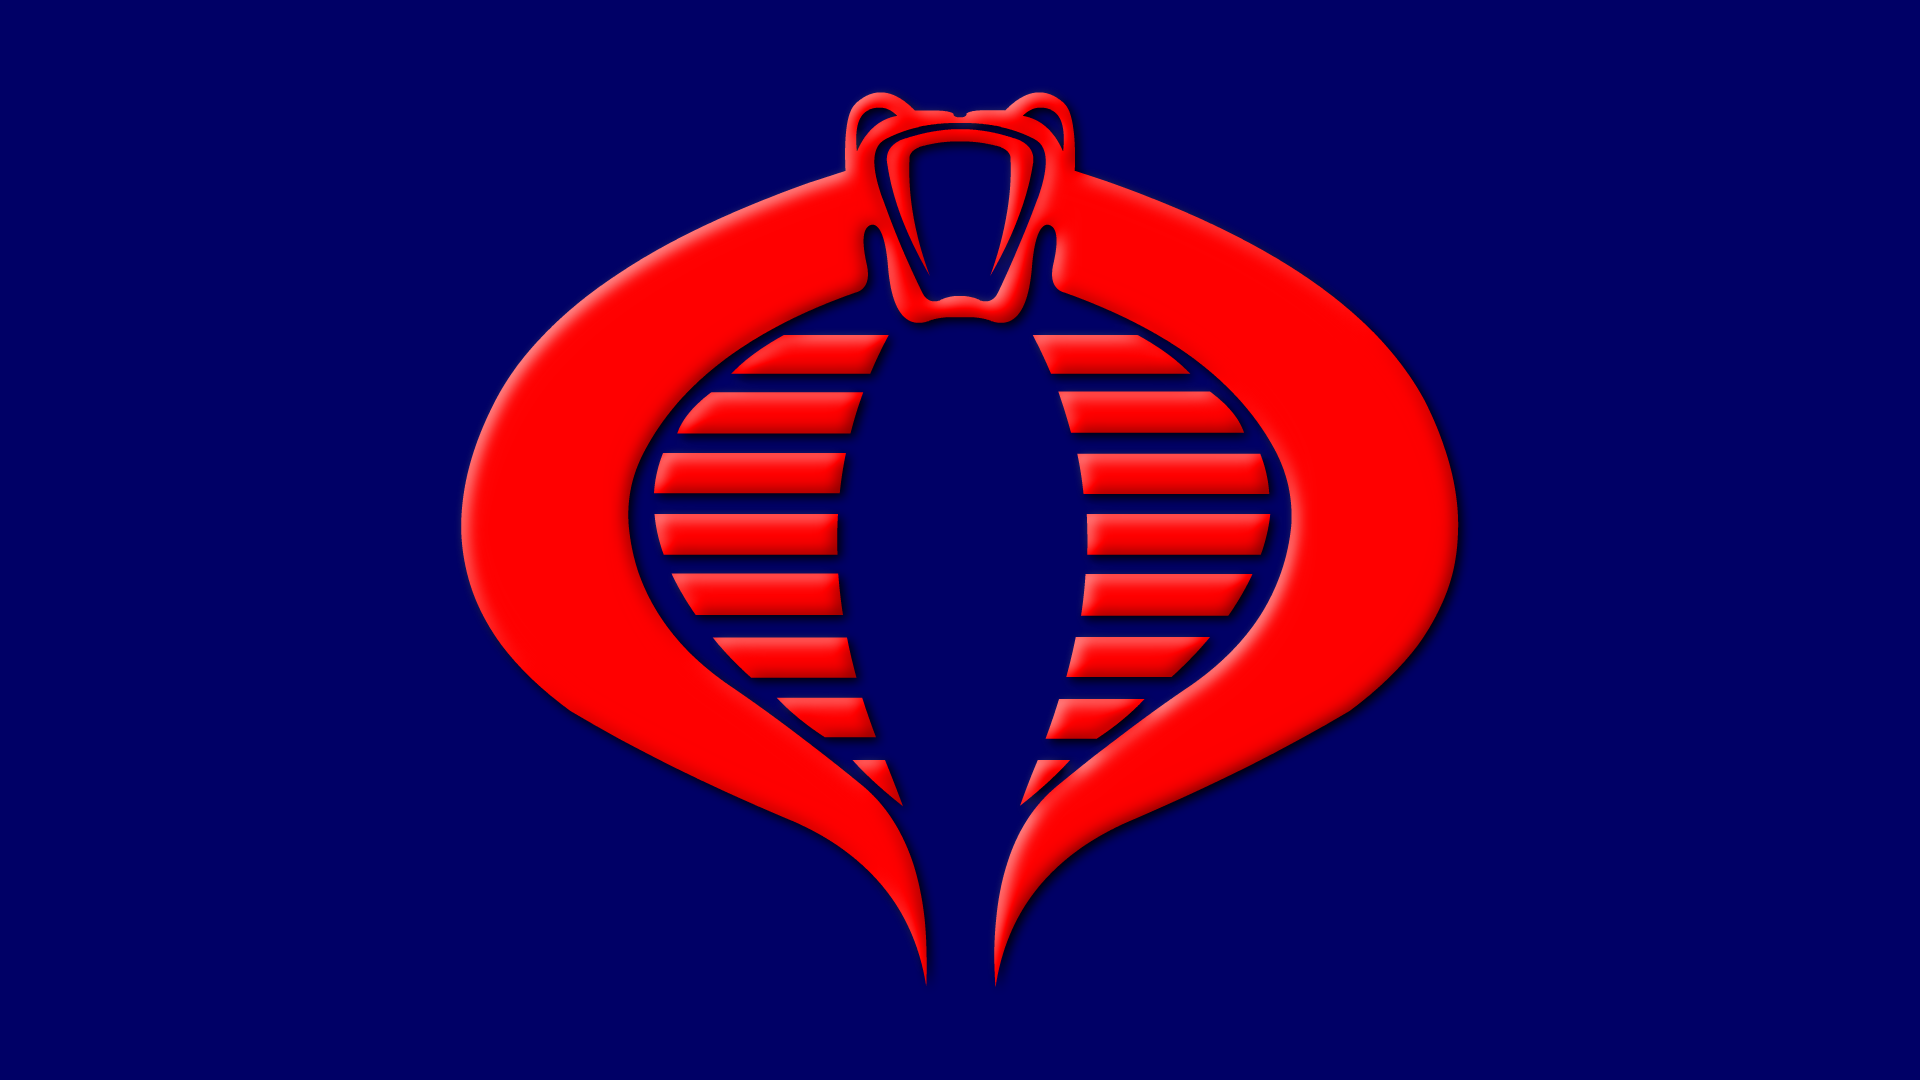 Персонажи кобры. Организация Кобра. Кобра логотип. Флаг с коброй. Флаг отряда Кобра.